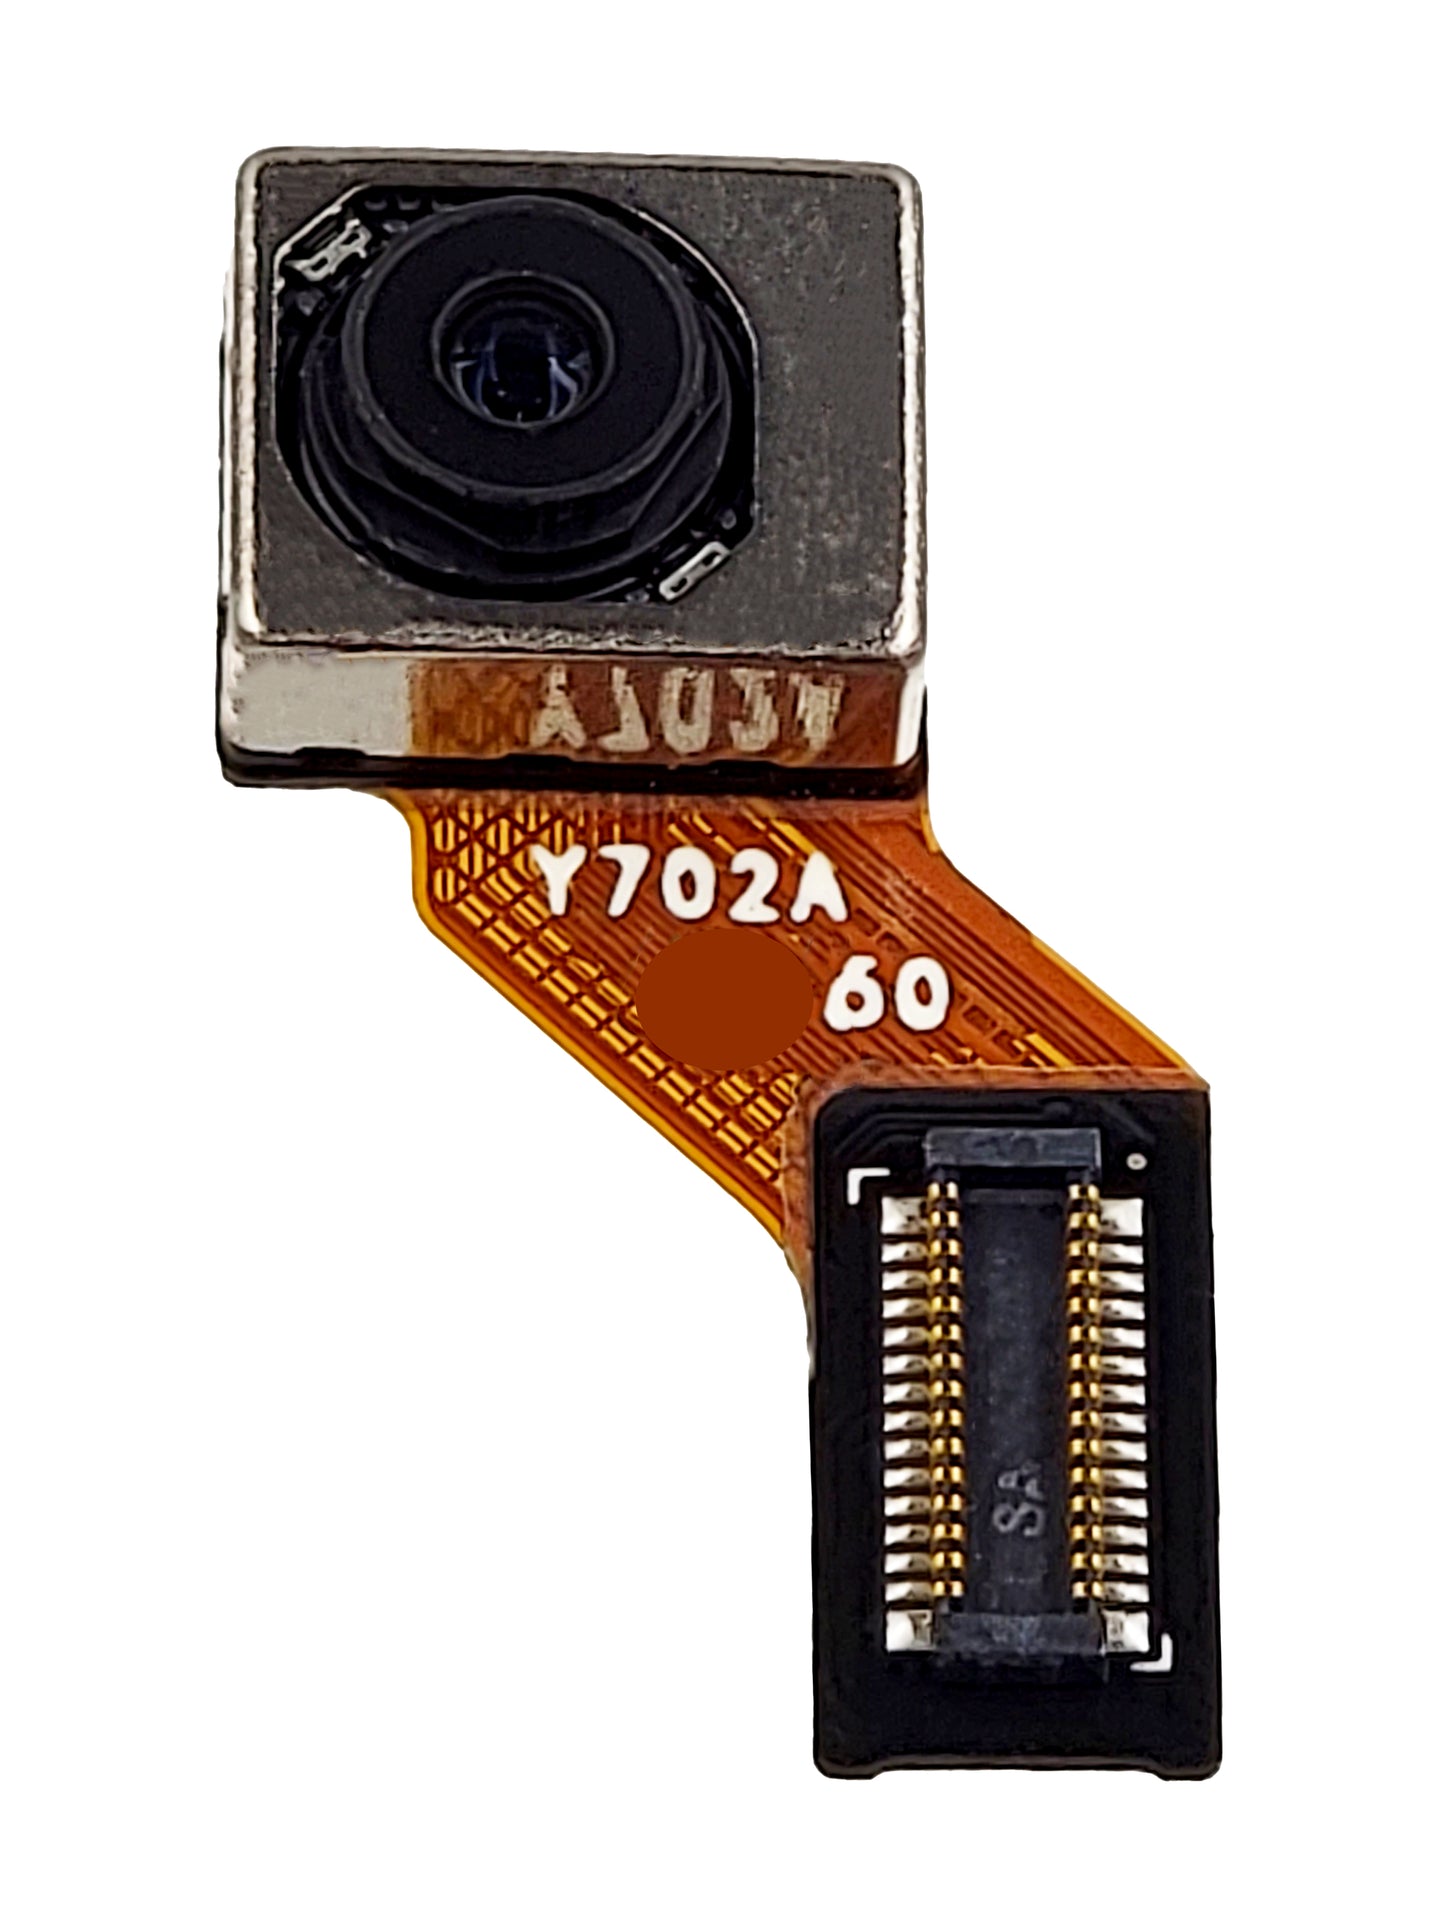 LGG G8 ThinQ Front Camera